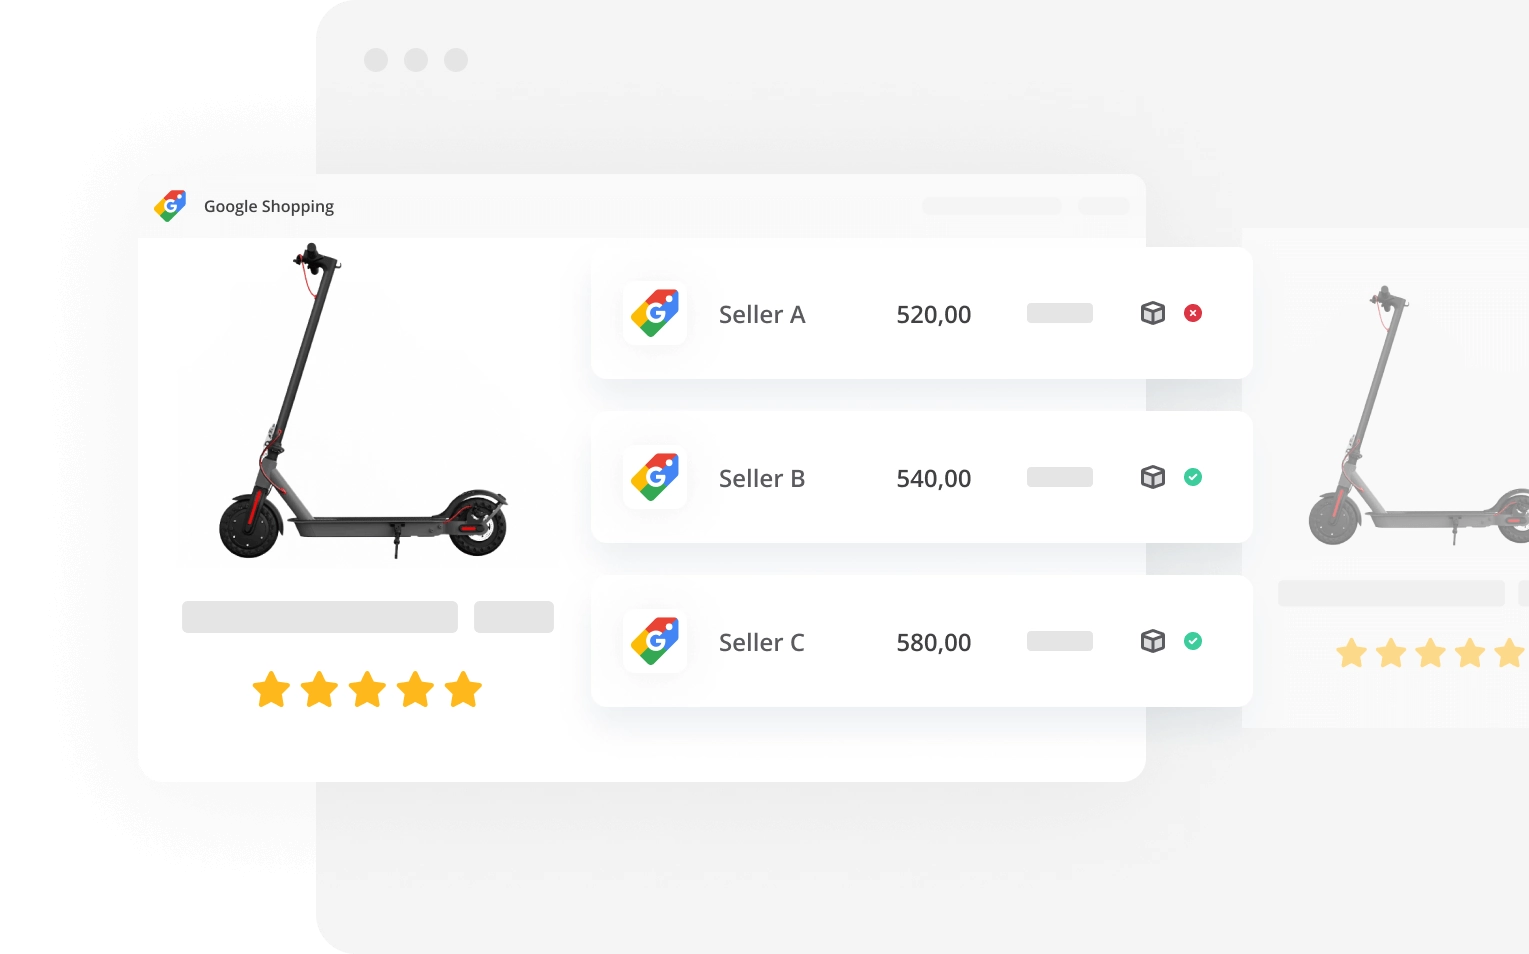 Google Shopping price monitoring tool